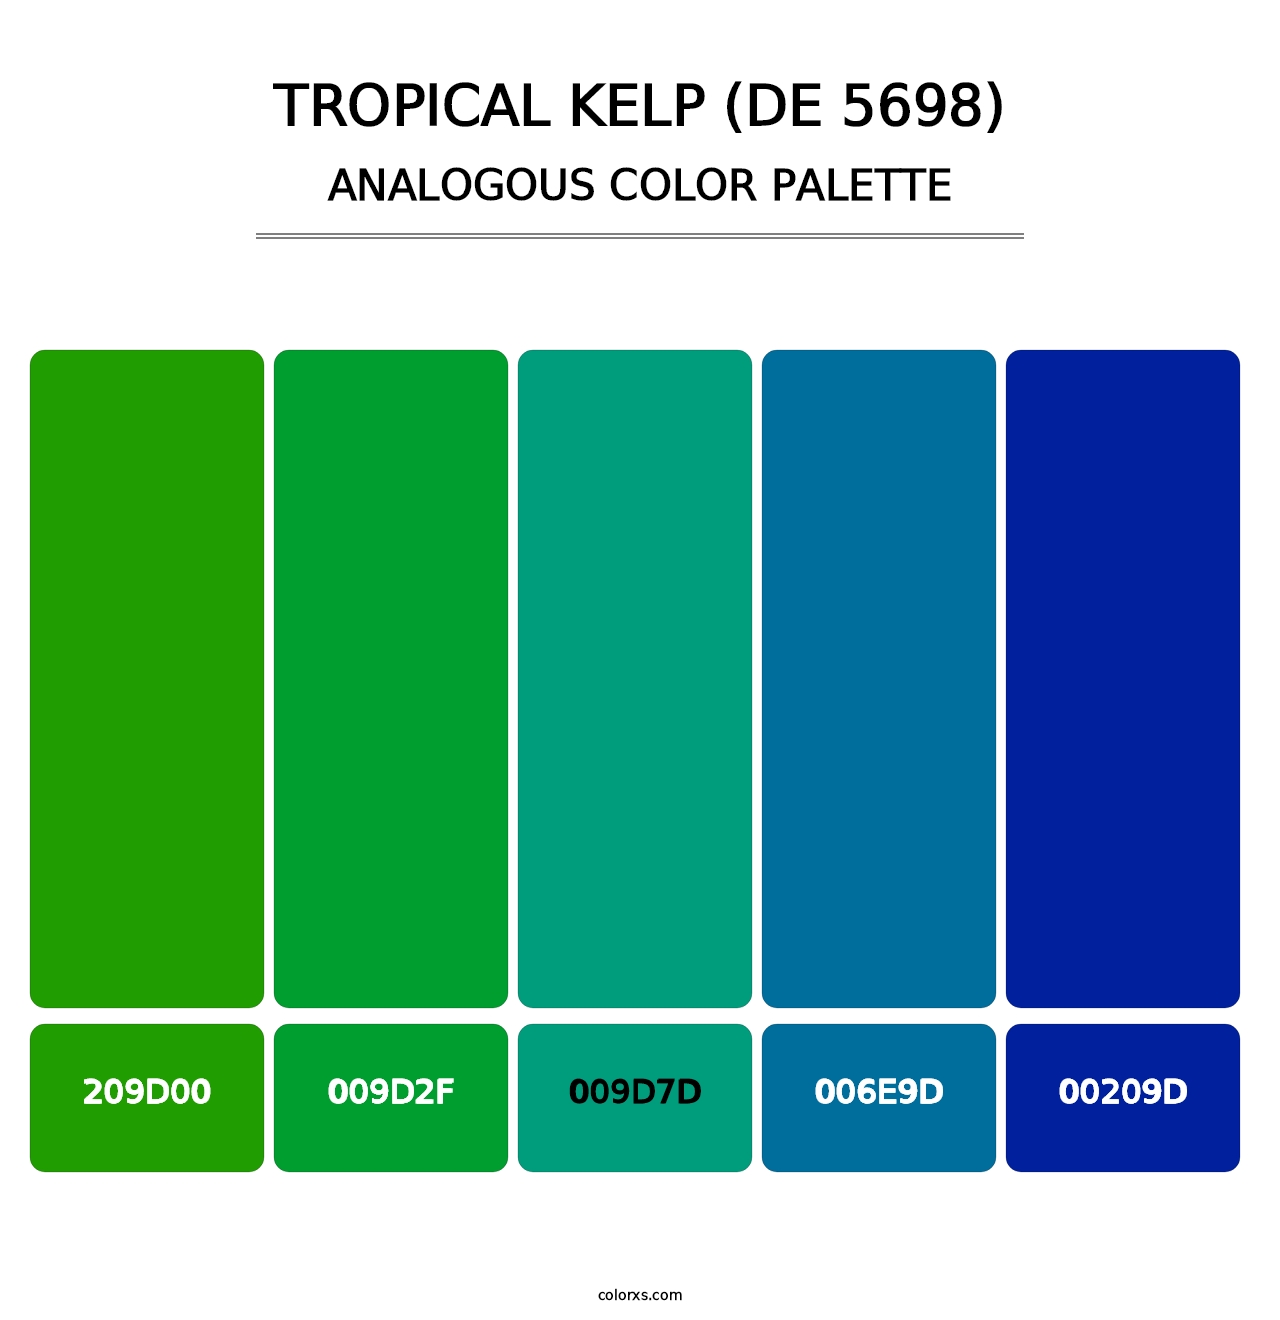 Tropical Kelp (DE 5698) - Analogous Color Palette